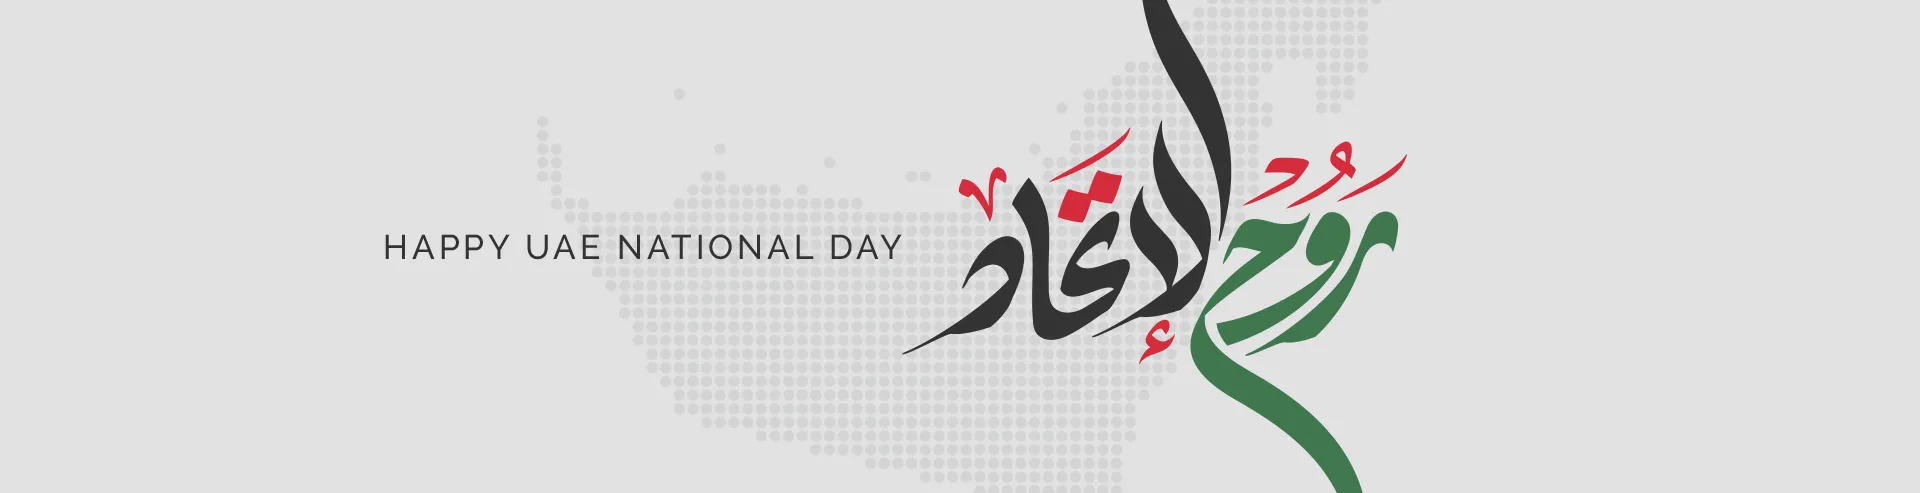 VM-Hero-UAE-National-Day-HP-1920x493.webp